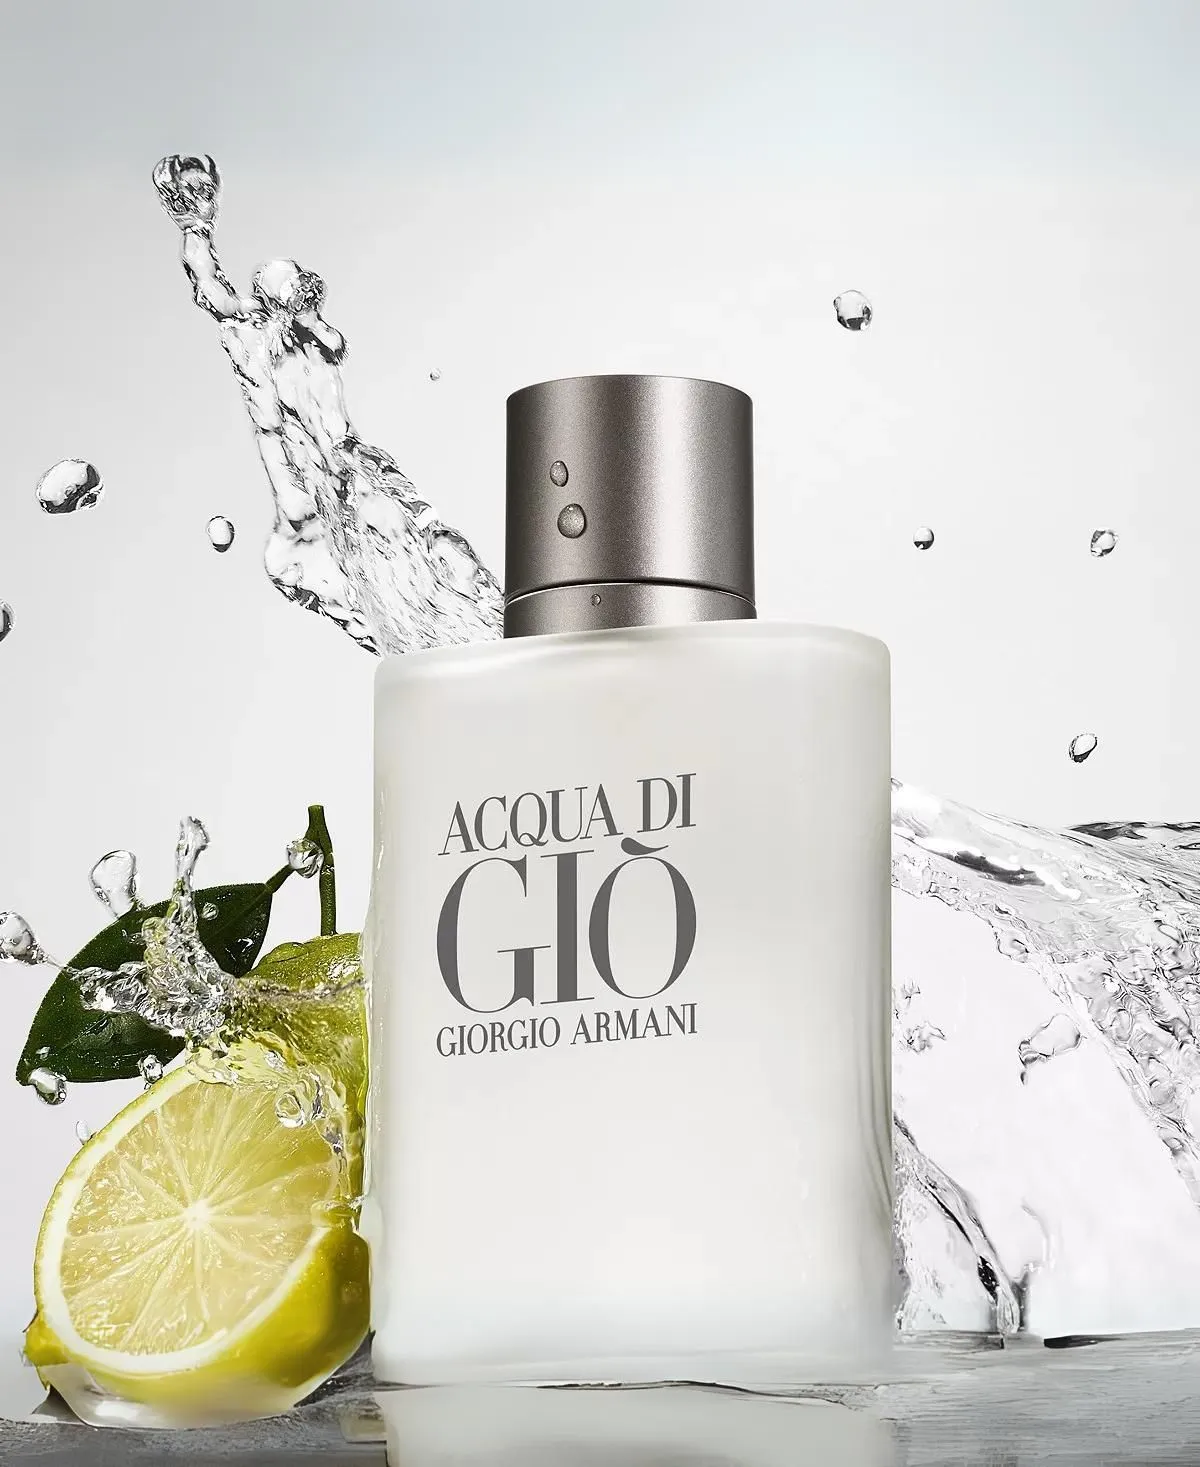 Giorgio Armani Acqua di Gio for Men Eau de Toilette (EDT) Spray